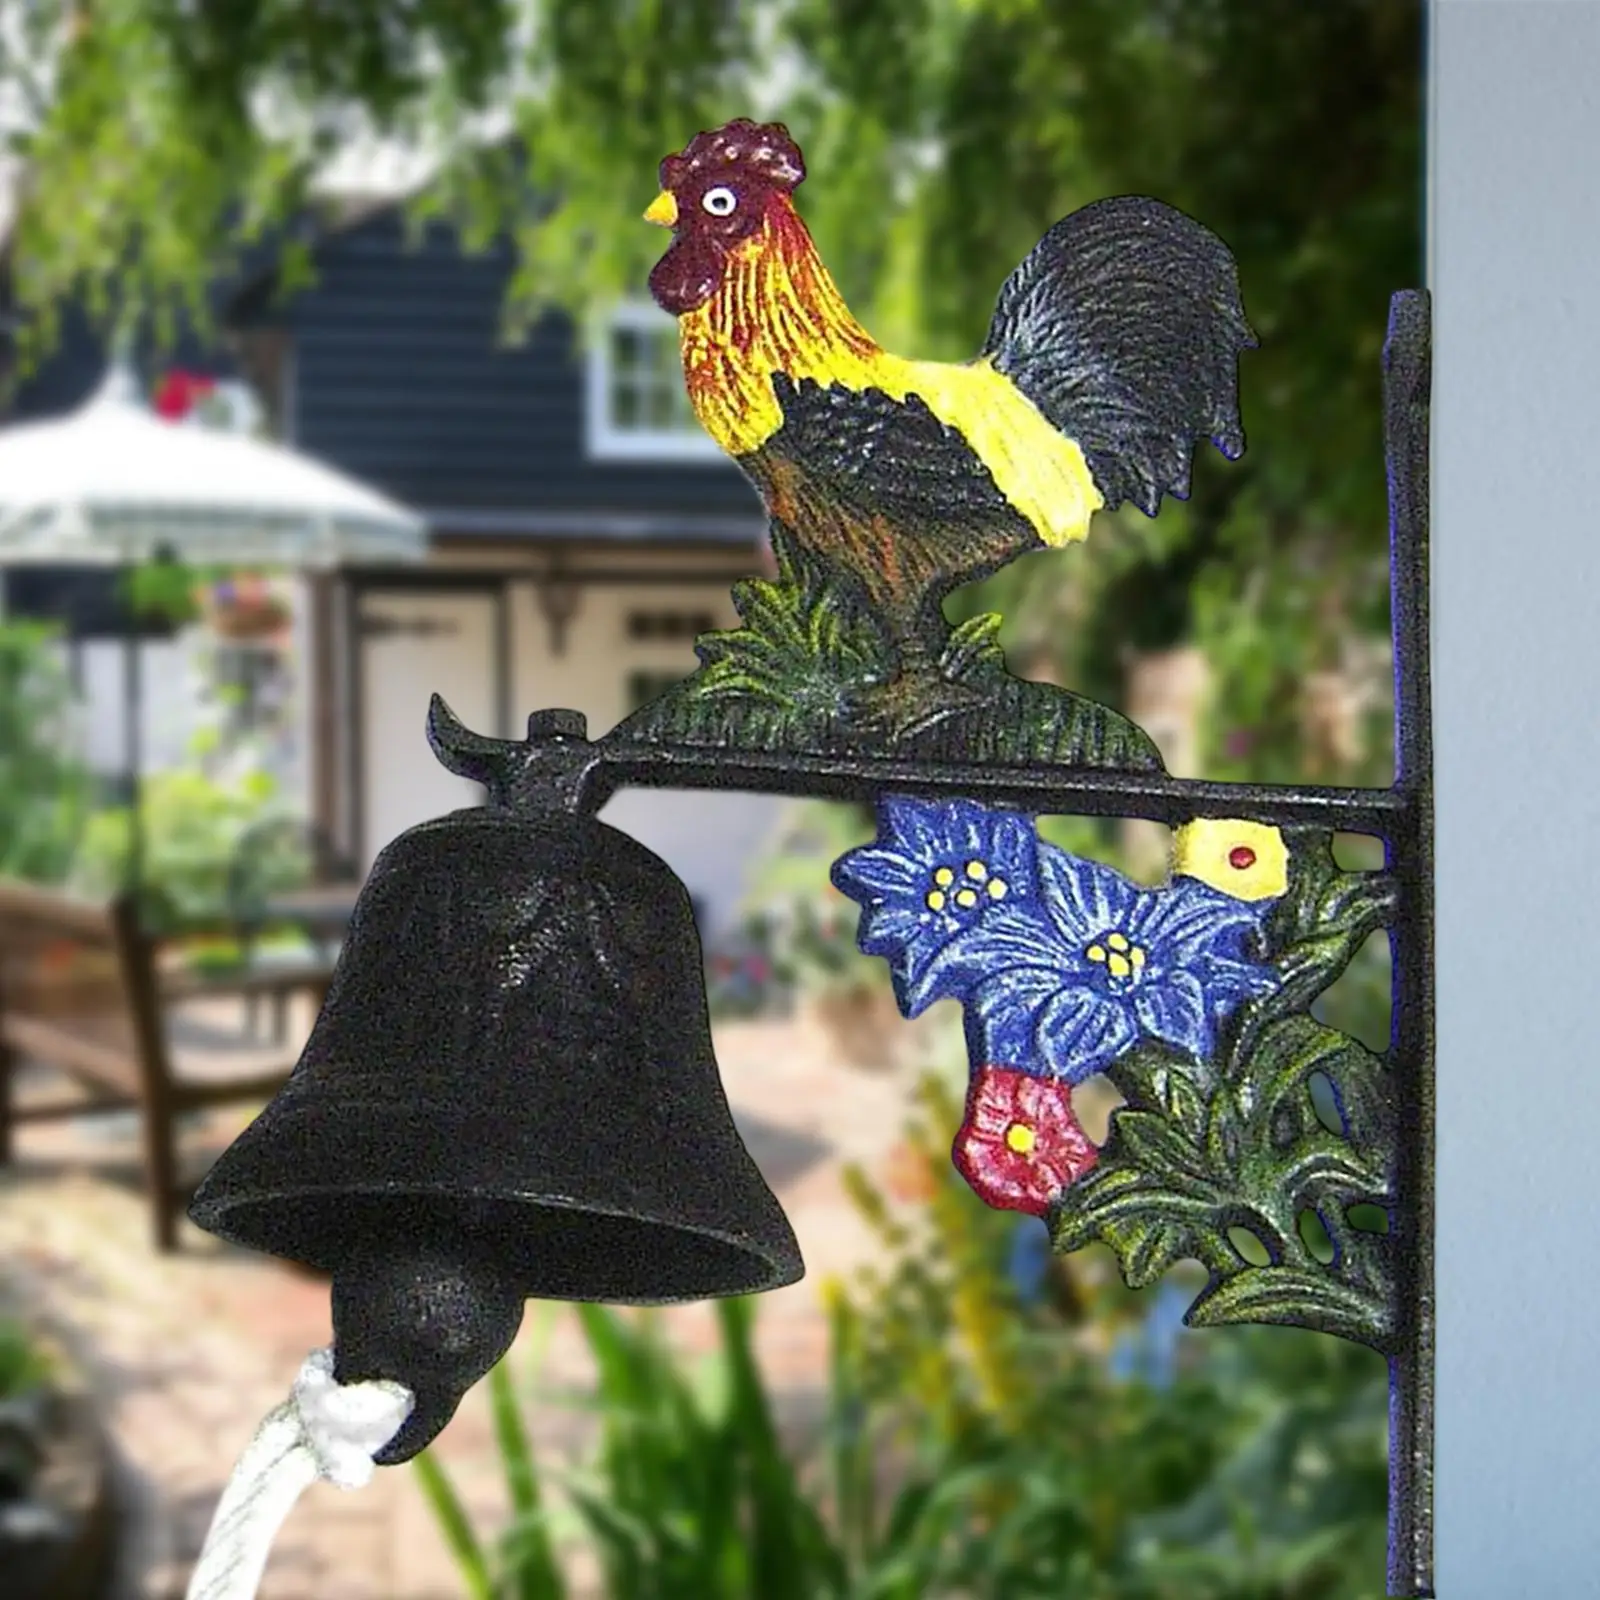 Retro Style Doorbell Rooster Door Bell Wall Mounted Doorbell for Porch Indoor Patio Front Door Decor